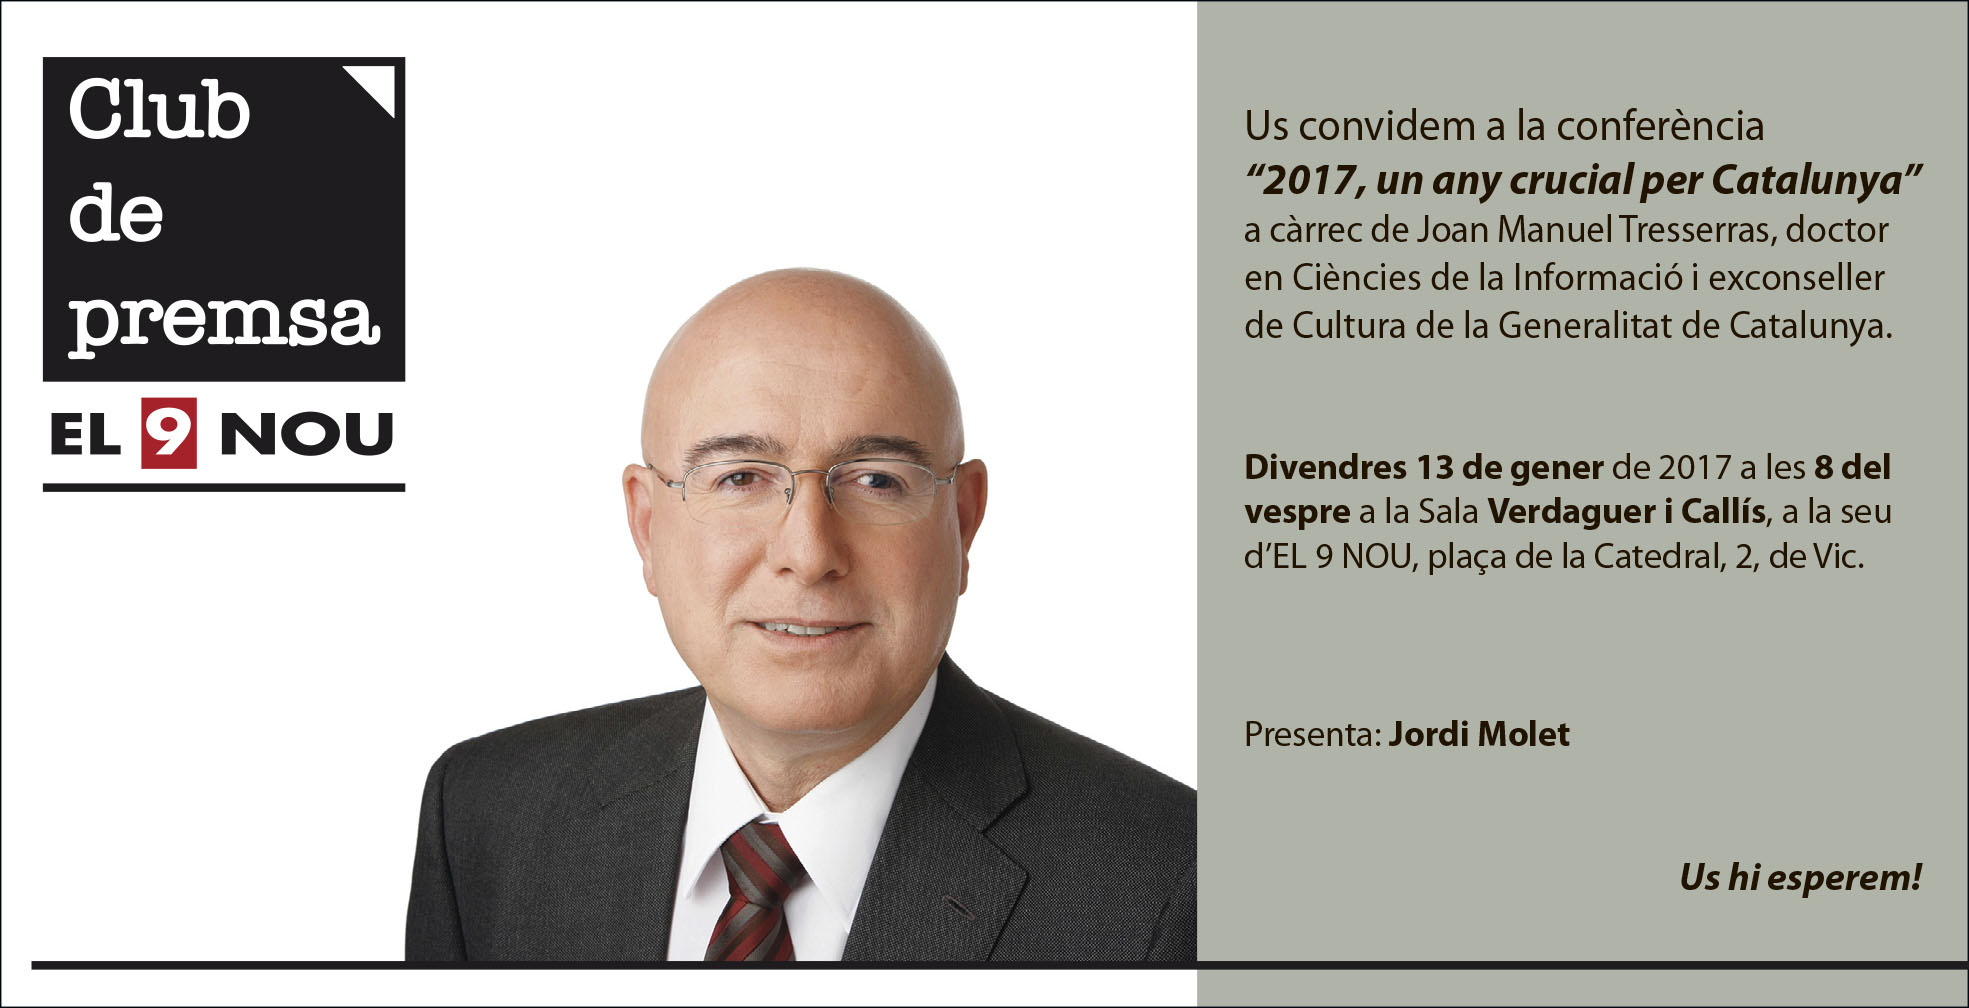 Joan Manuel Tresserras pronunciarà la conferència a partir de les 8 del vespre a la seu de El 9 Nou de Vic